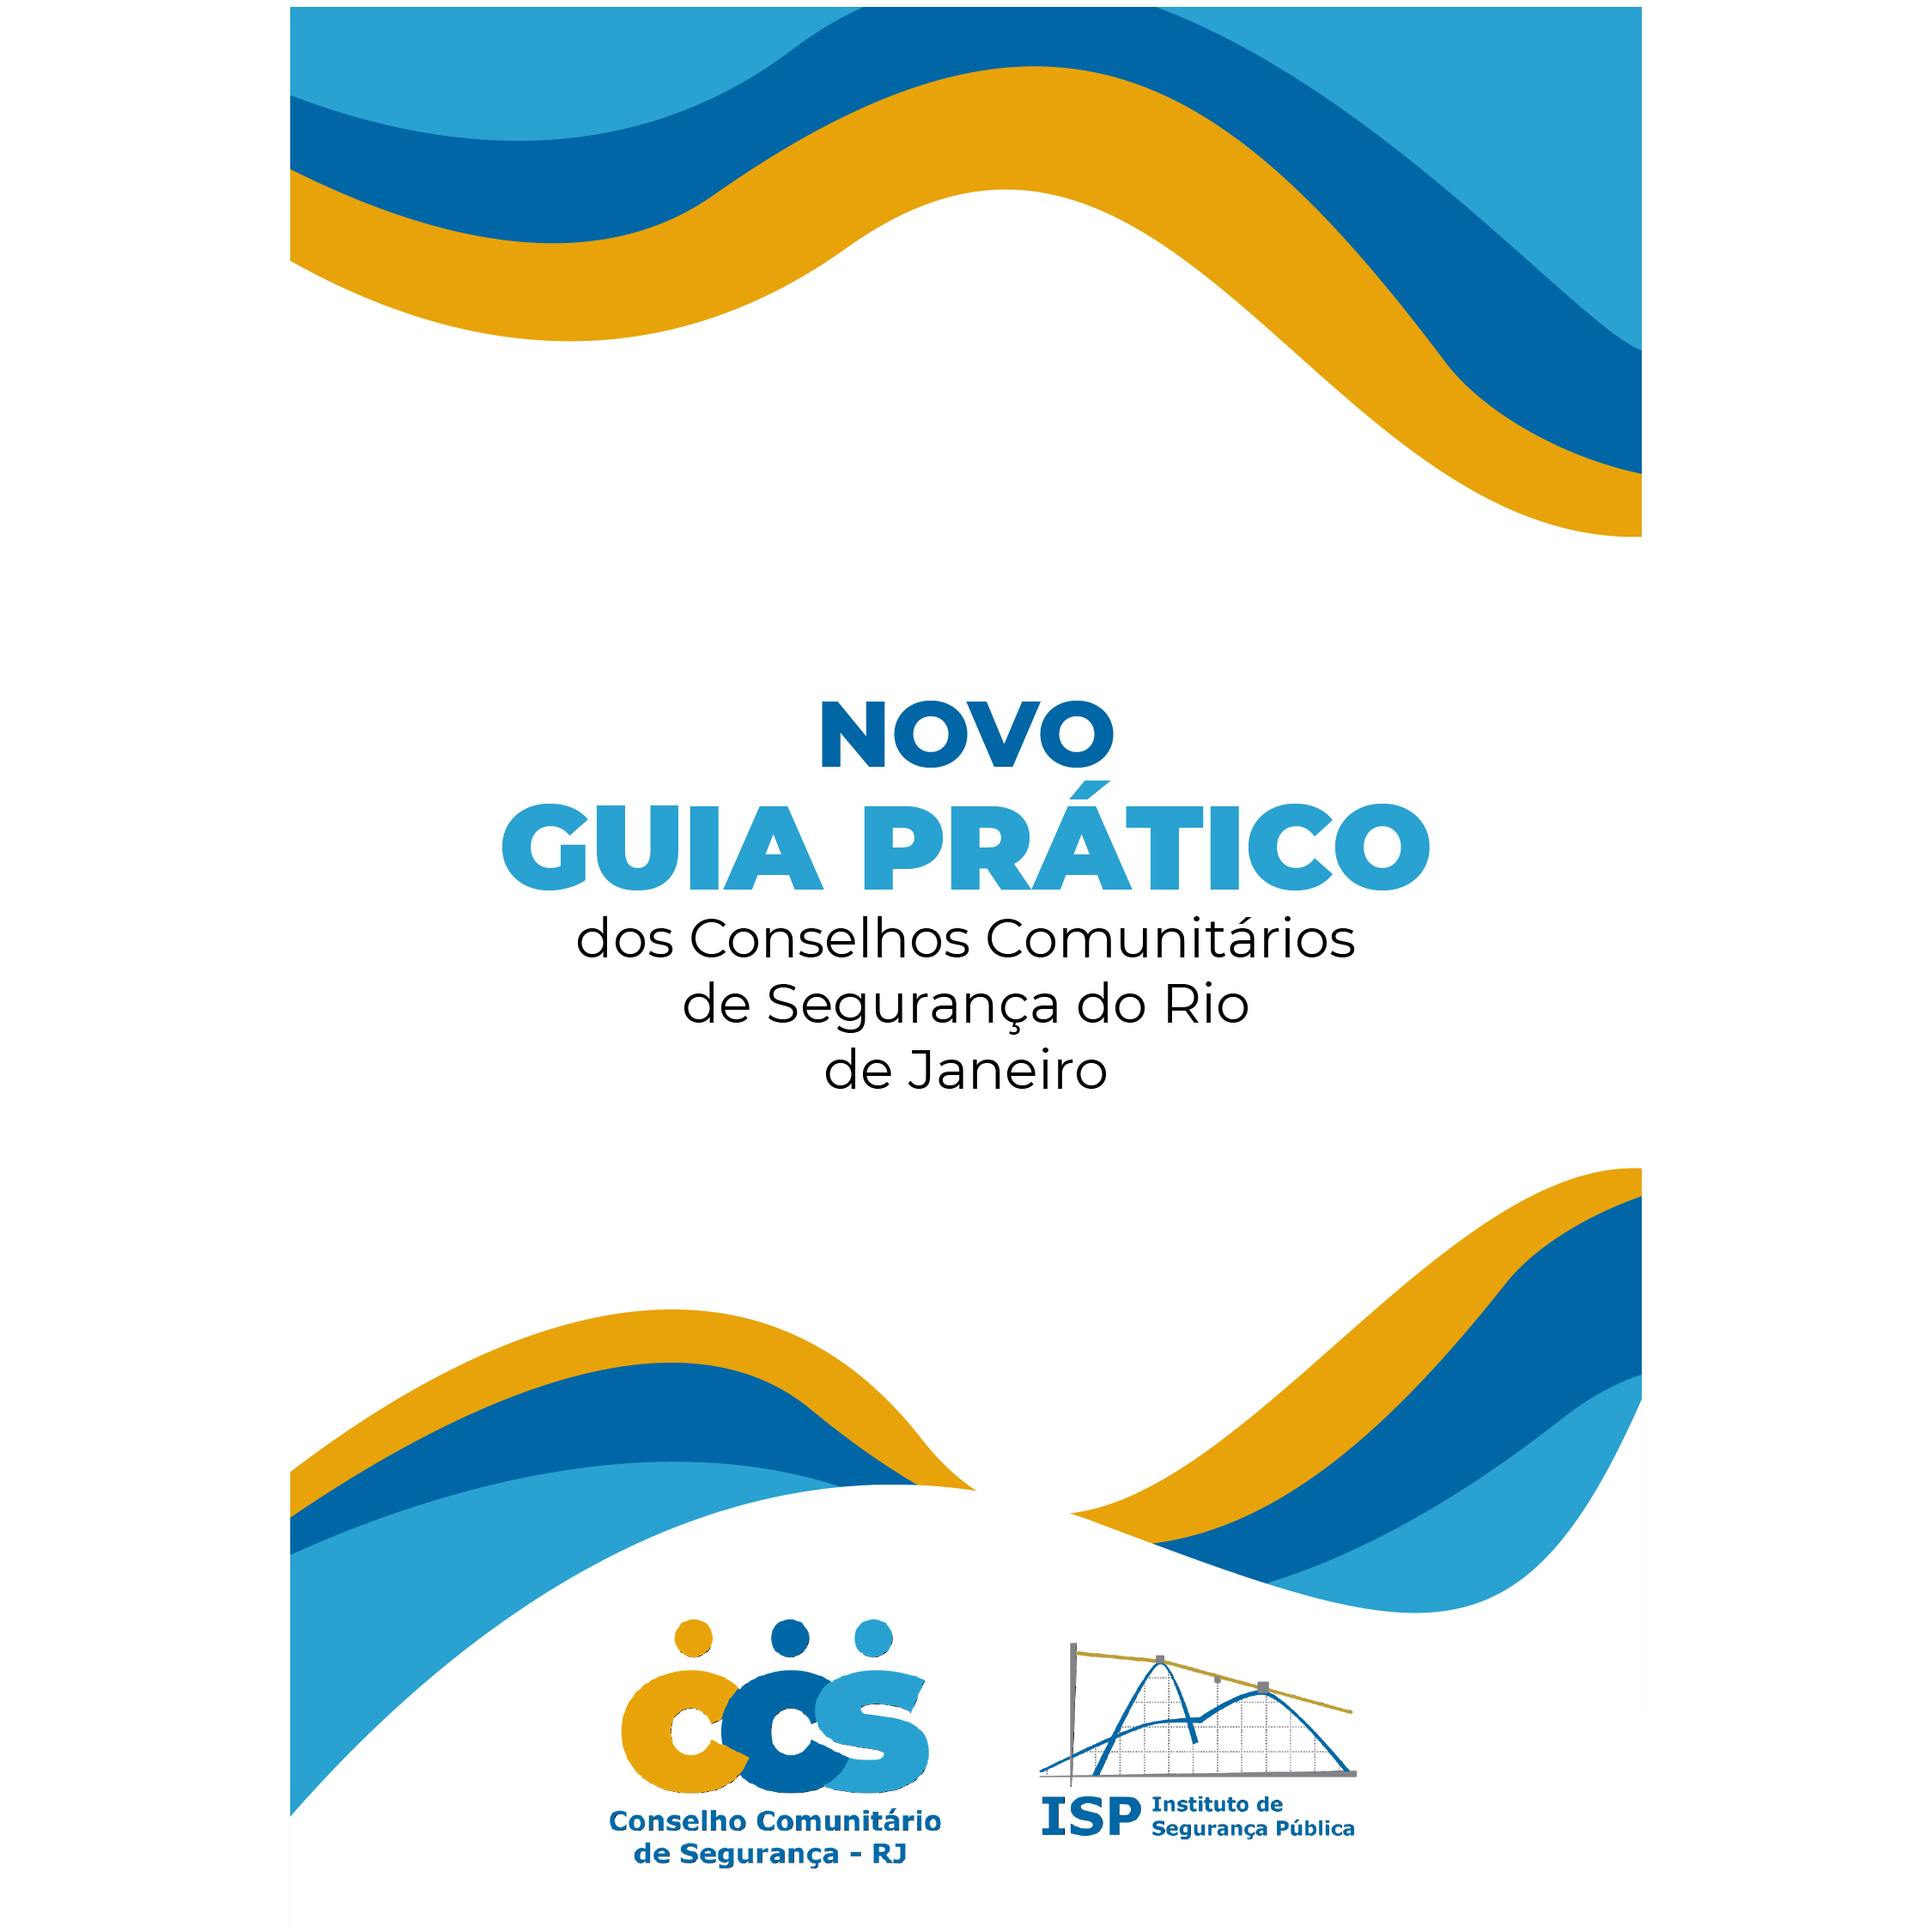 Novo guia prático dos Conselhos Comunitários de Segurança do Rio de Janeiro